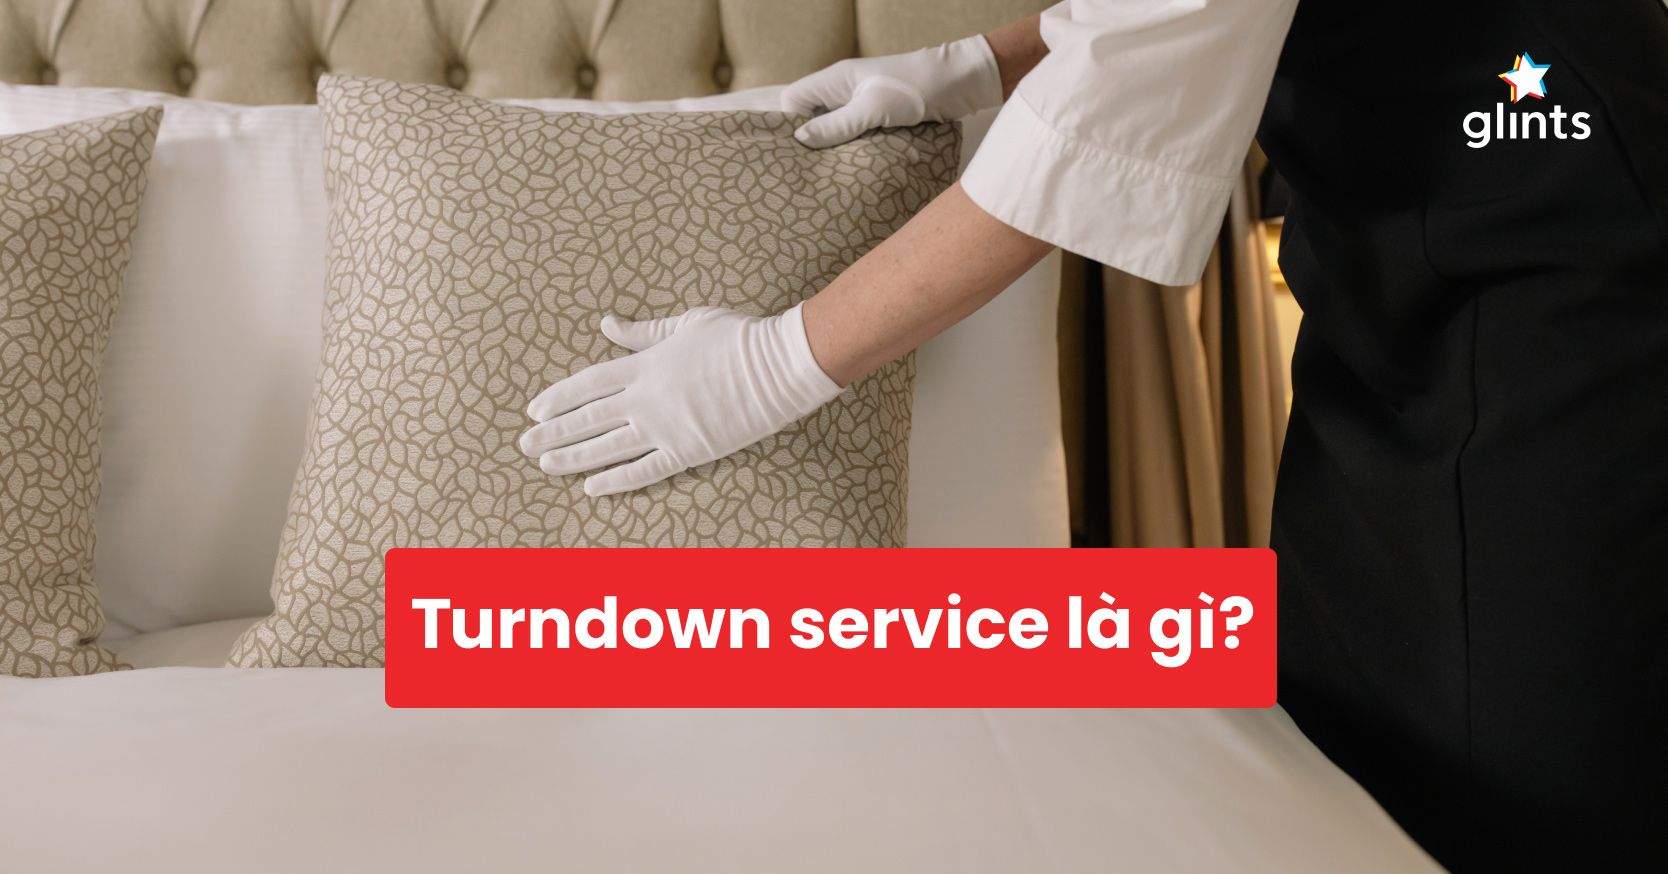 Turndown Service Là Gì? Tìm Hiểu Dịch Vụ Dọn Phòng Đêm Trong Khách Sạn